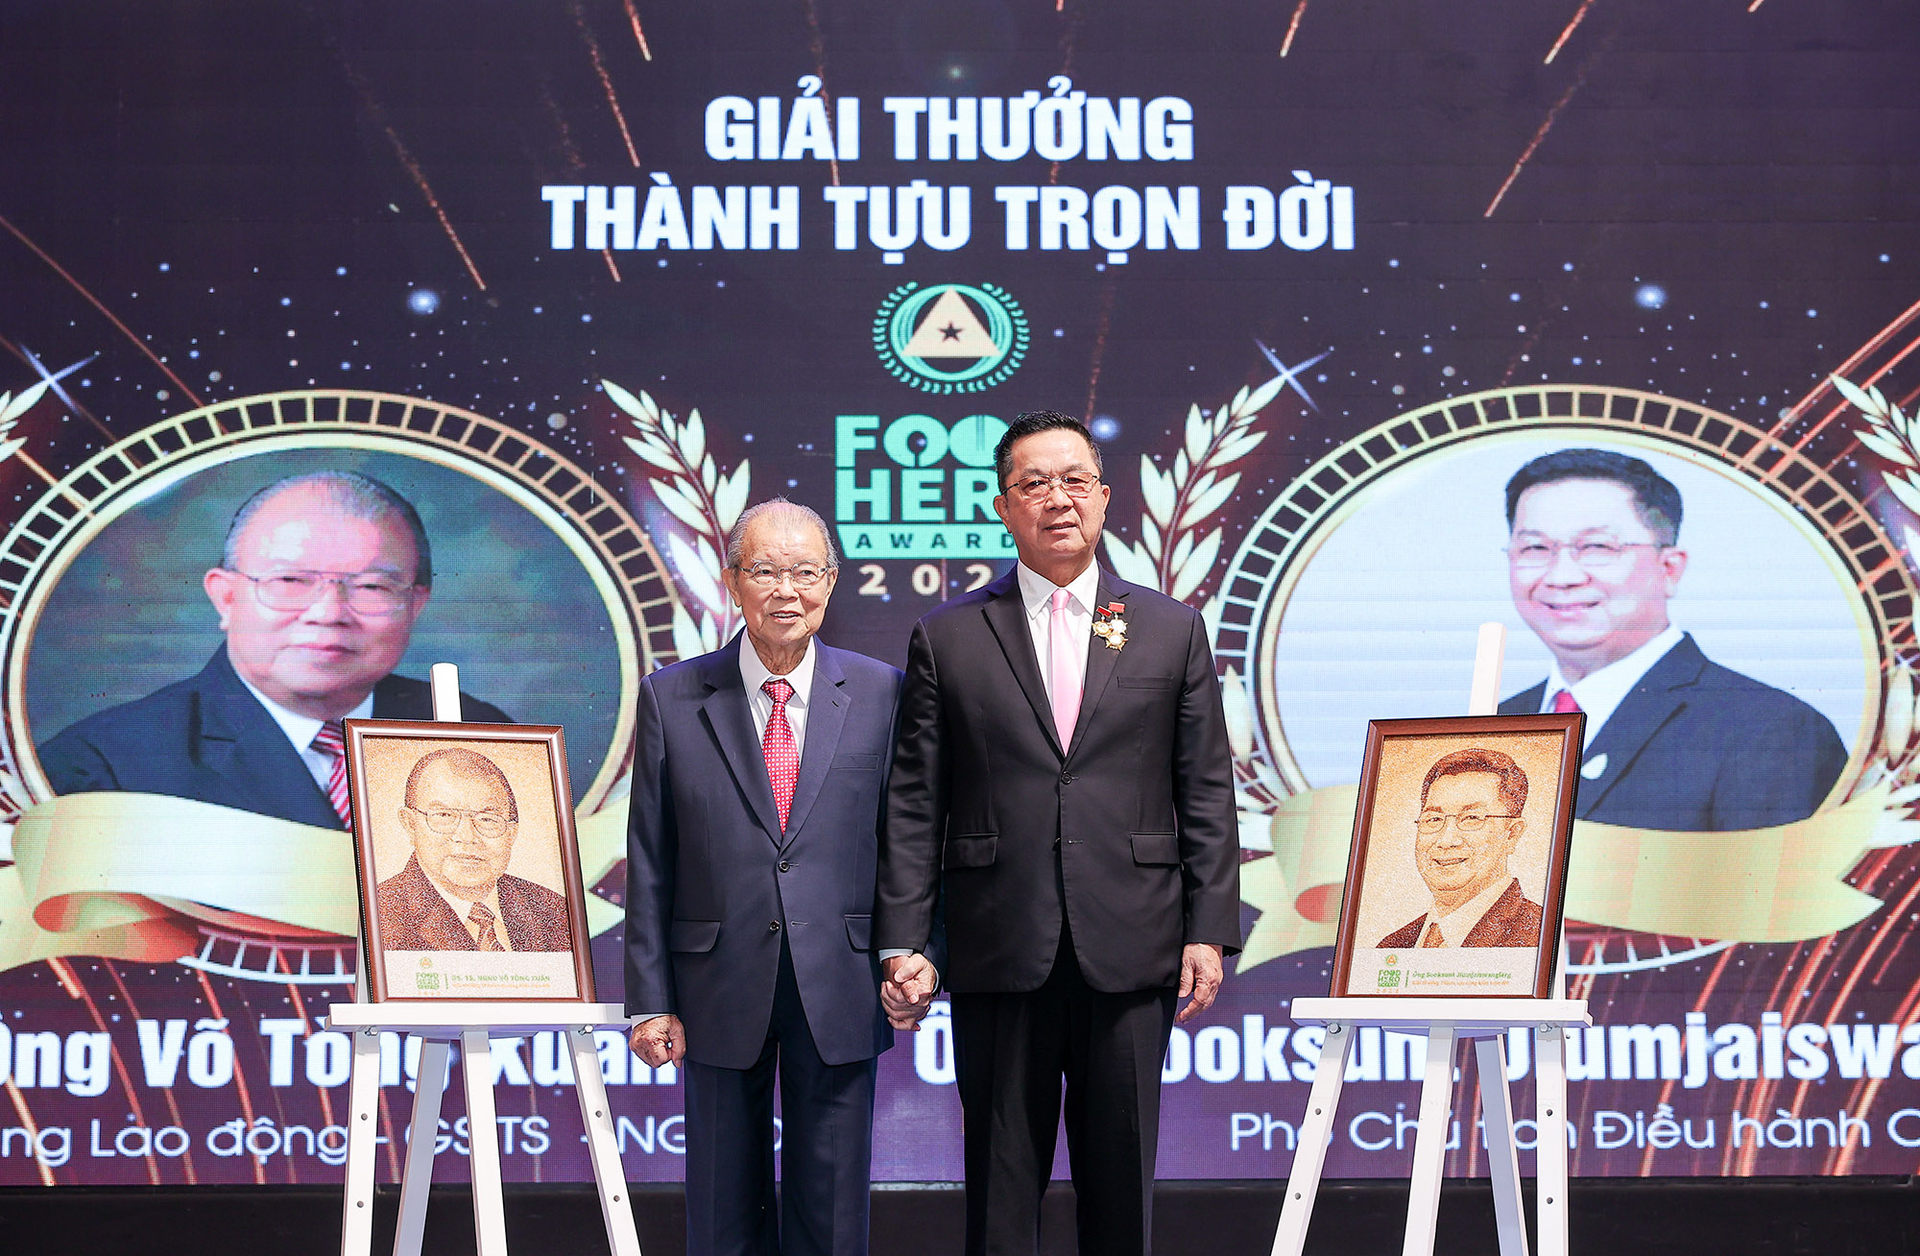 GS.TS Võ Tòng Xuân (trái) và ông Sooksunt Jiumjaswanglerg, Phó Chủ tịch Hội đồng điều hành CPF (phải) nhận danh hiệu 'Thành tựu cống hiến trọn đời'.